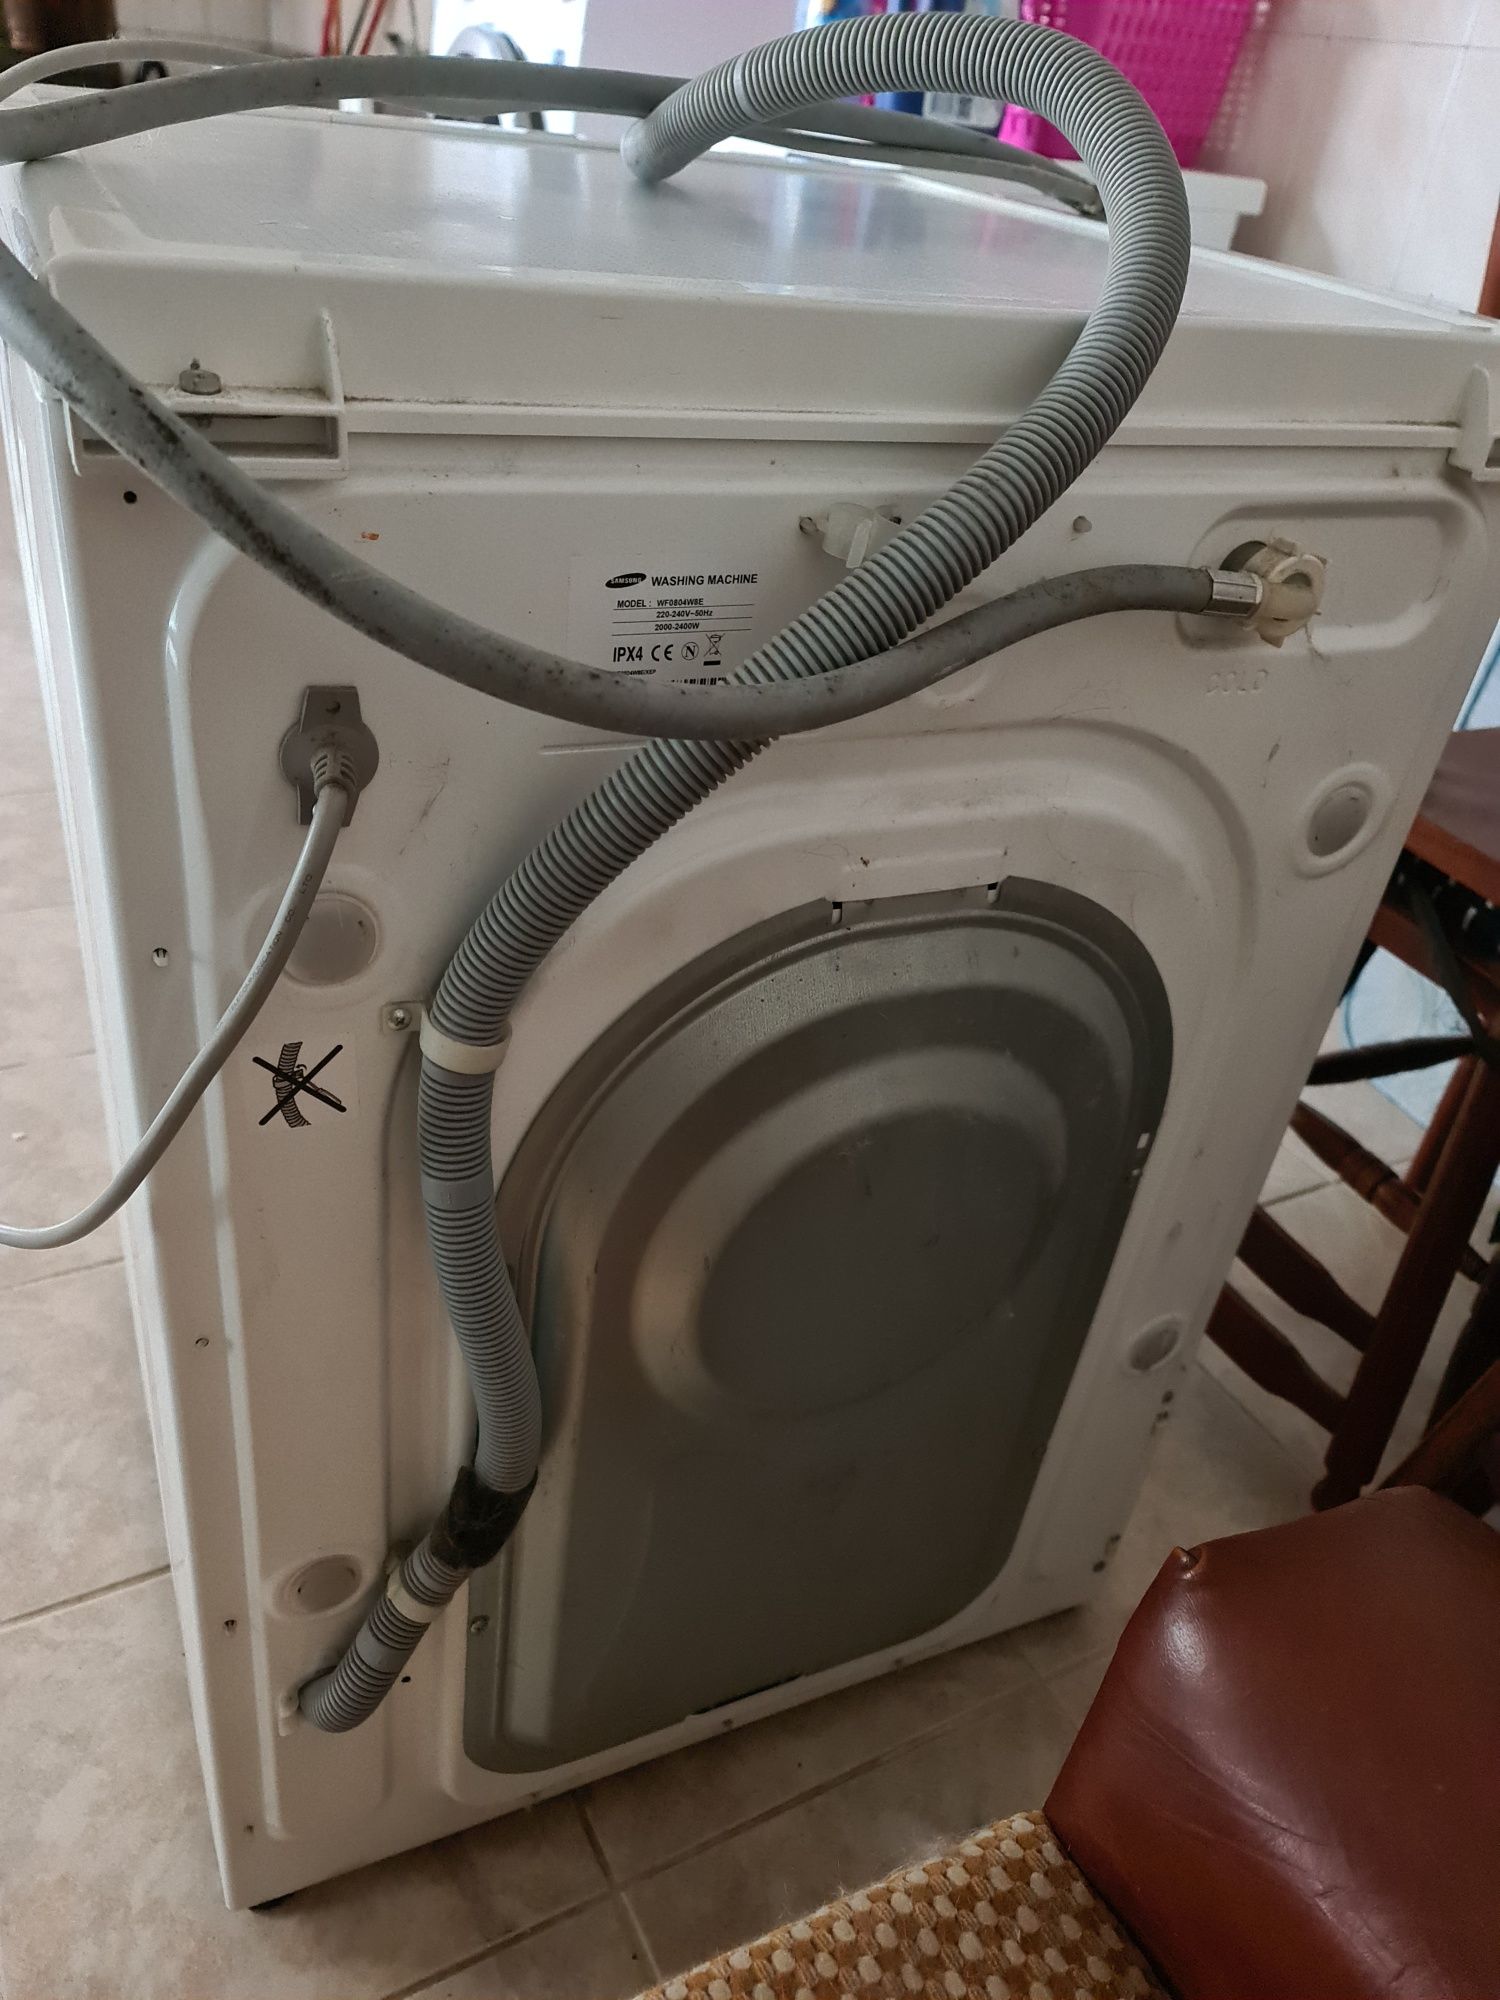 Maquina lavar roupa samsung com avaria